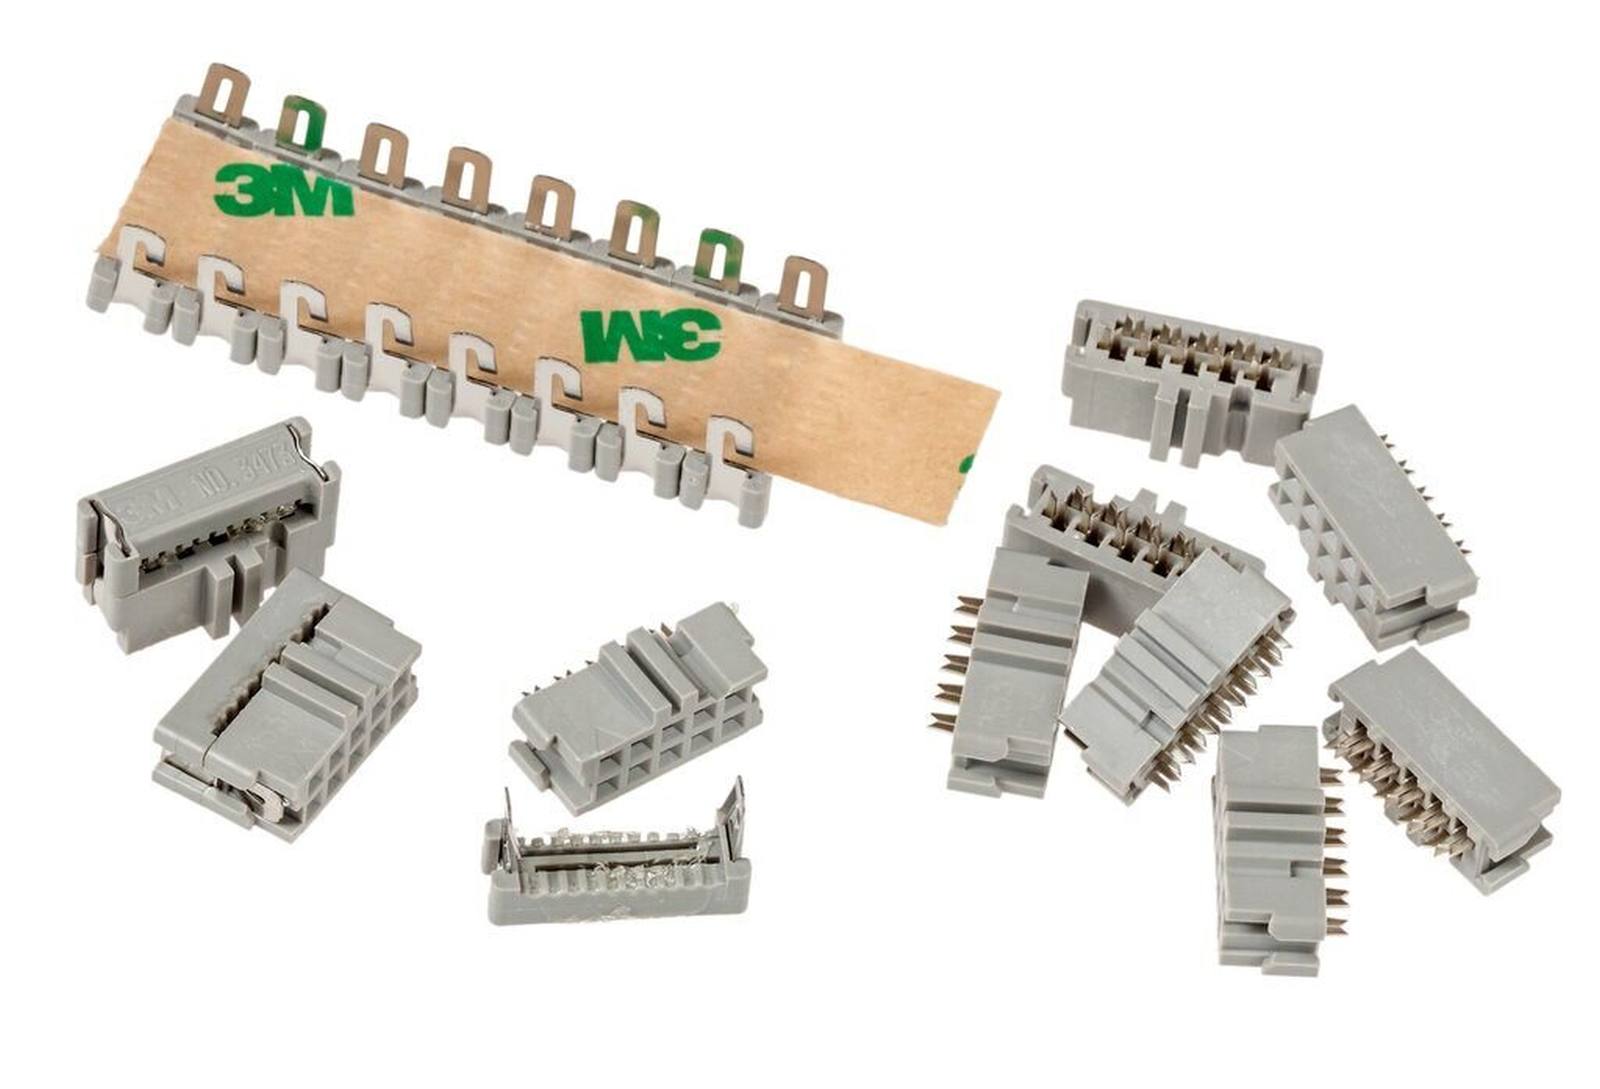 3M 3473-6600, vrouwelijke connector voor kabelmontage, 10-pin, 3000-serie, 2,54 mm, 0,76 Âµm Au, grijs